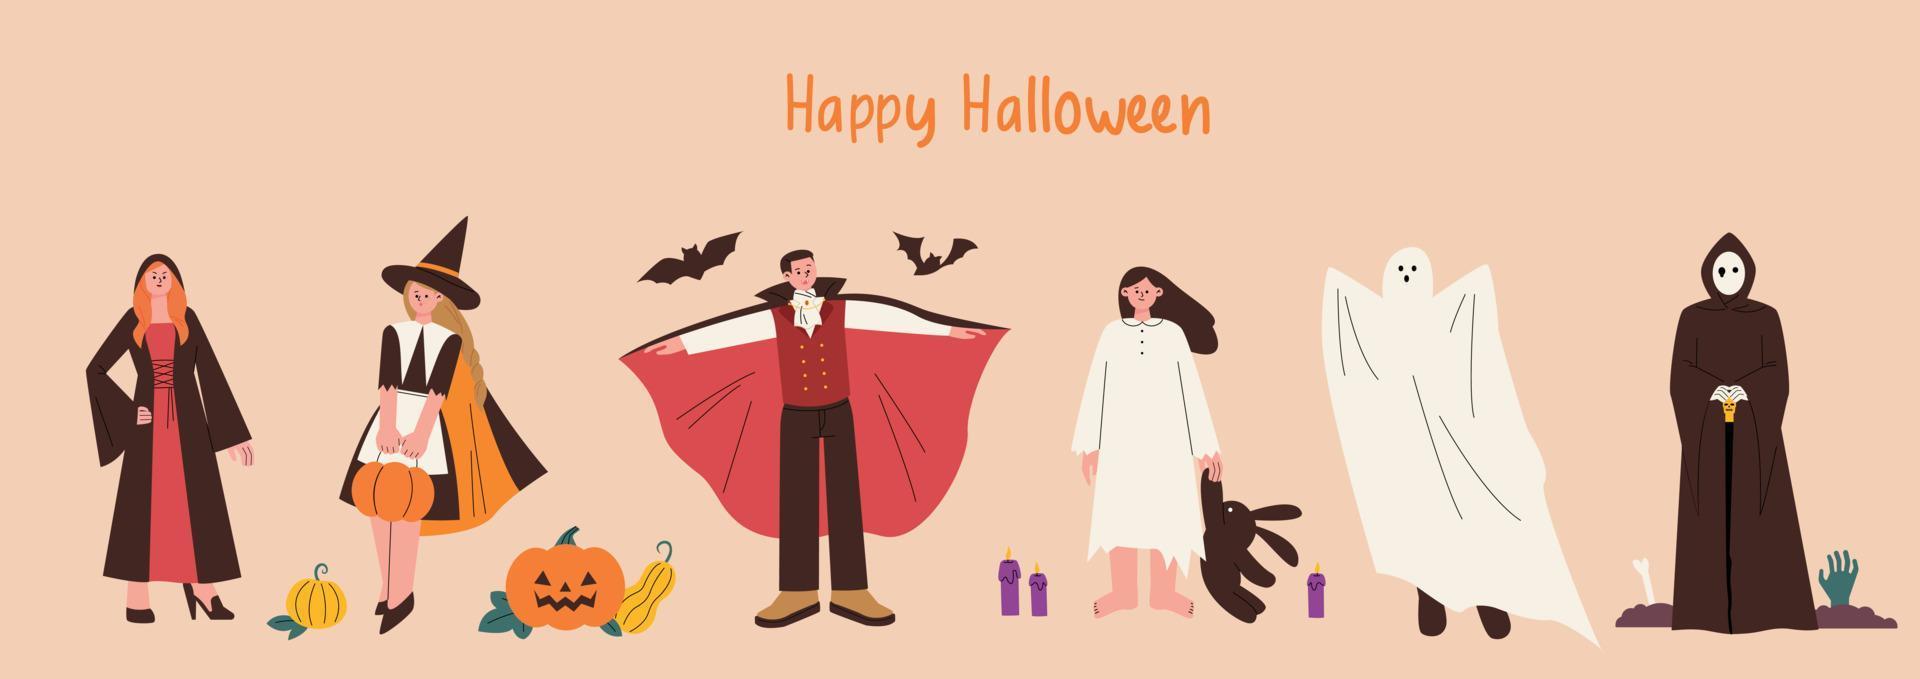 gente en disfraces de halloween. mago, bruja, vampiro, fantasma, segador. ilustración vectorial de estilo de diseño plano. vector